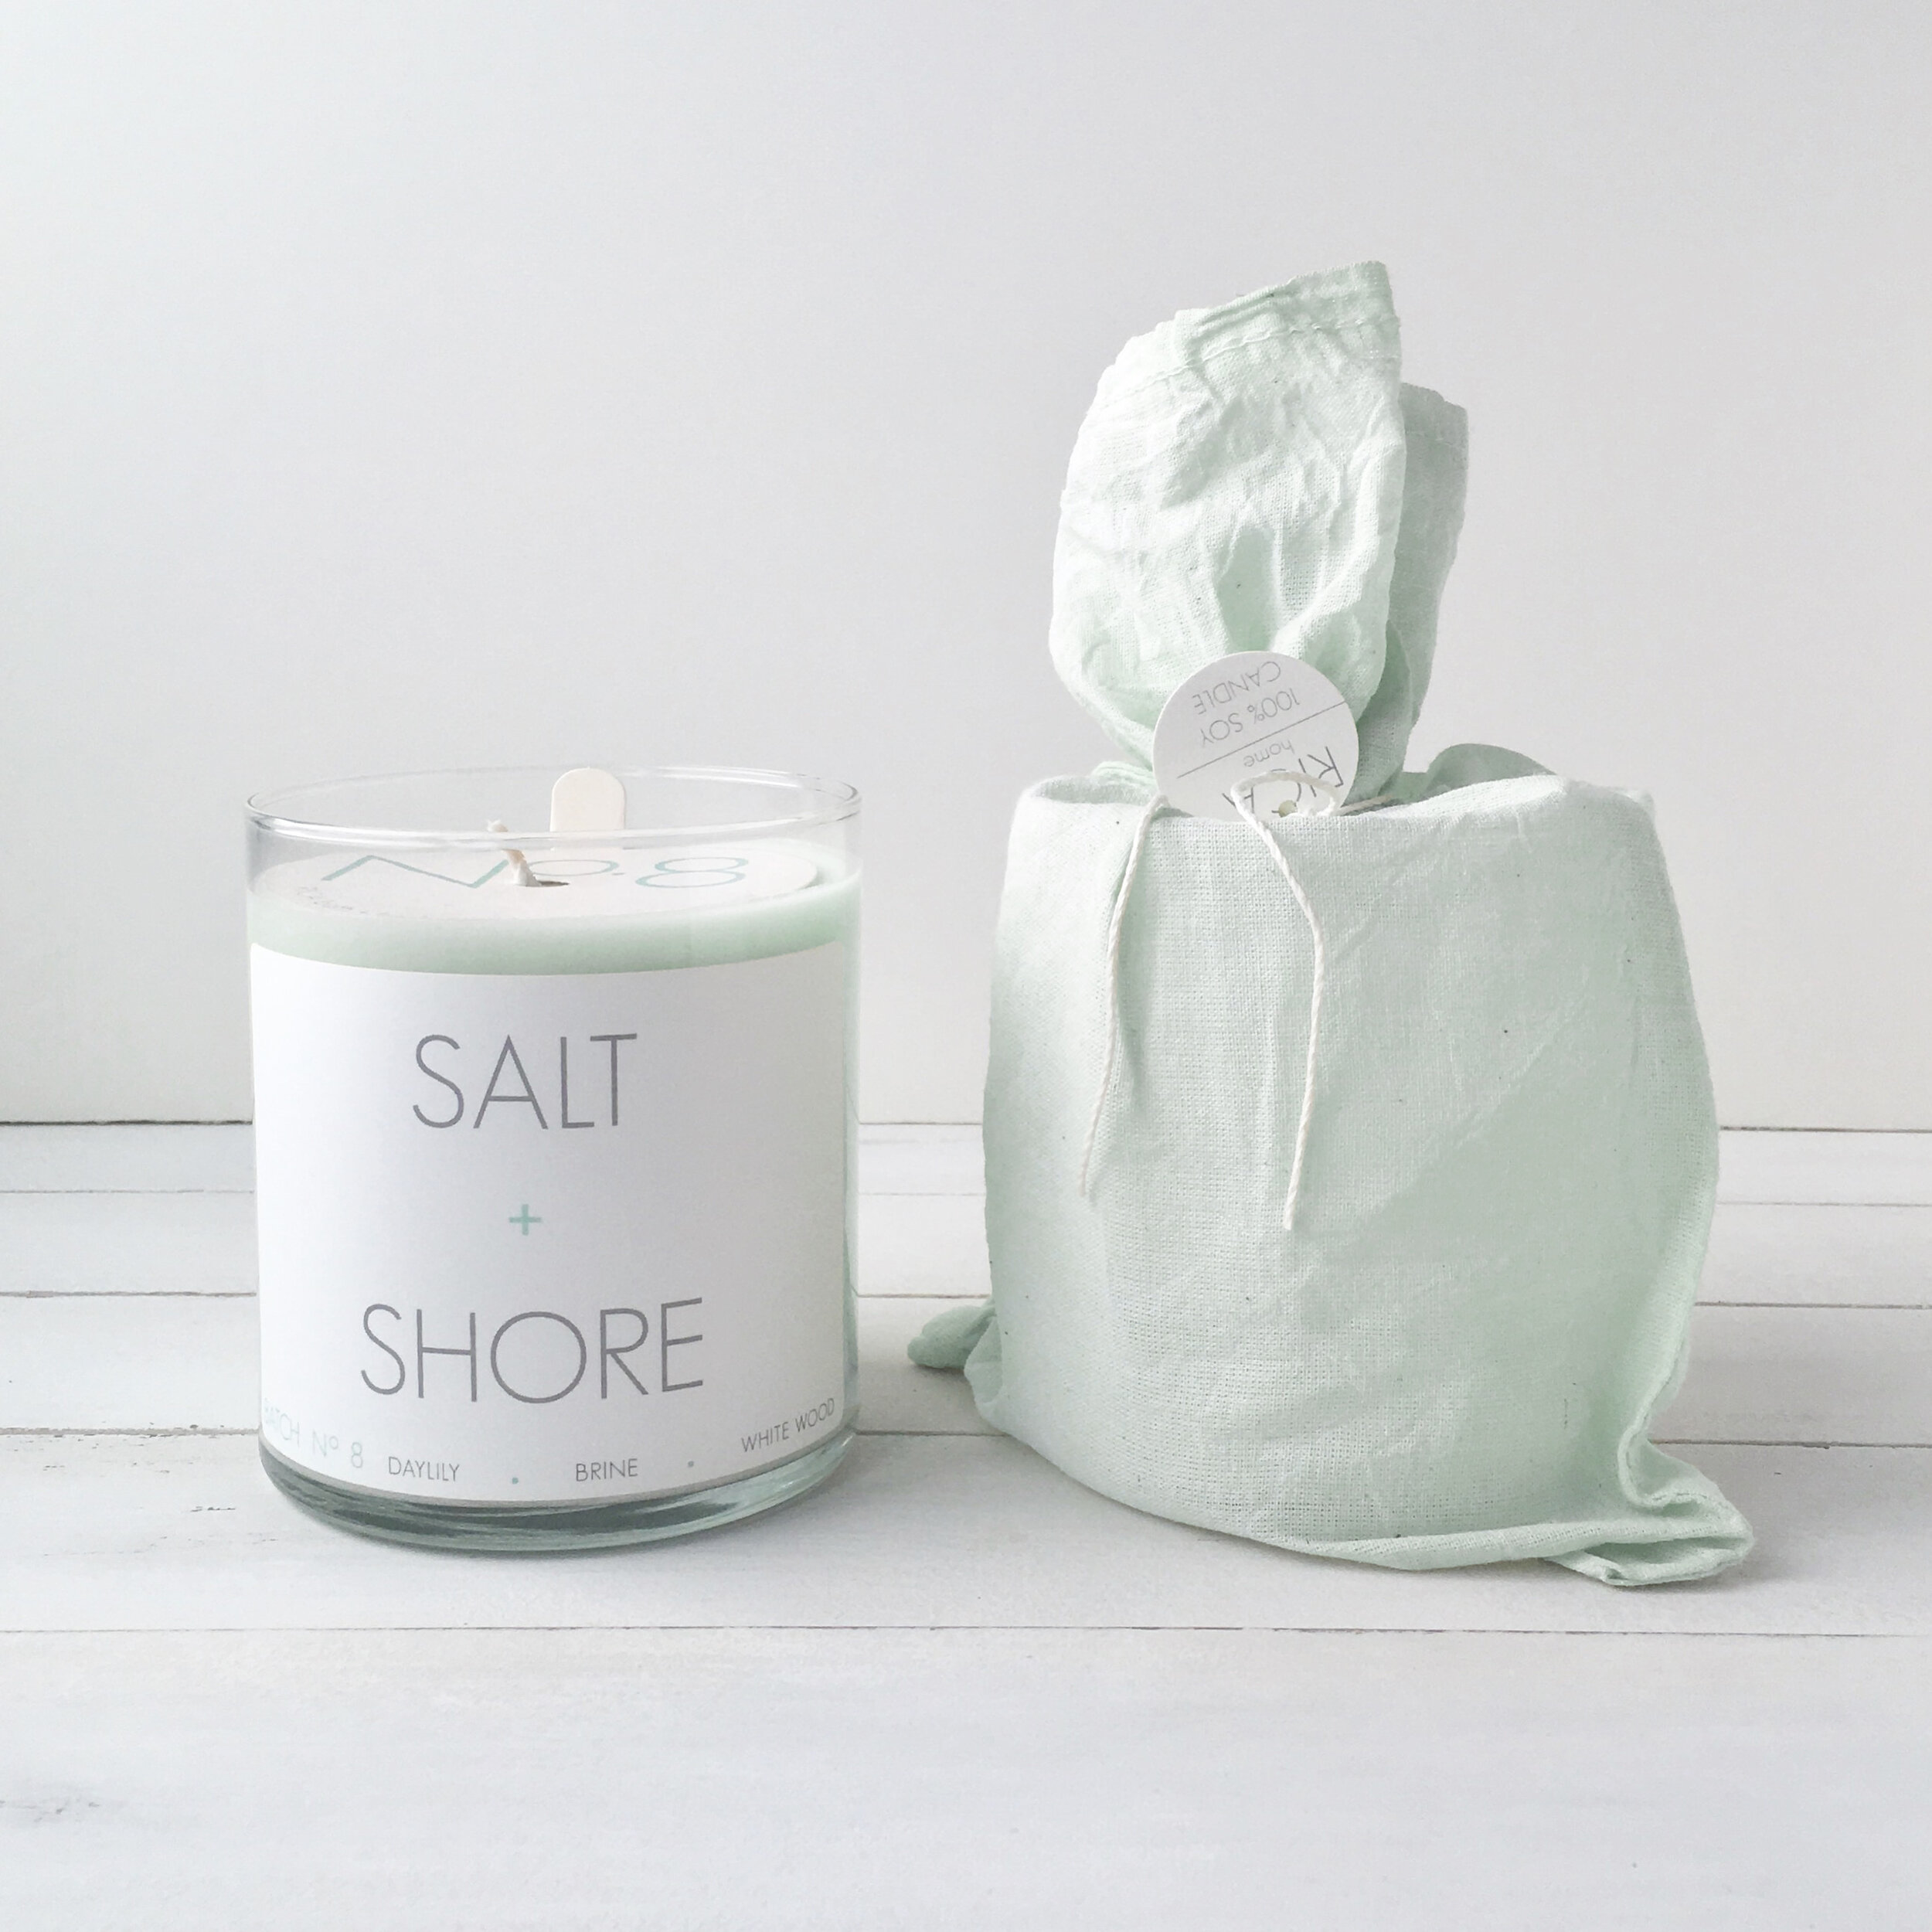 Salt + Shore Candle